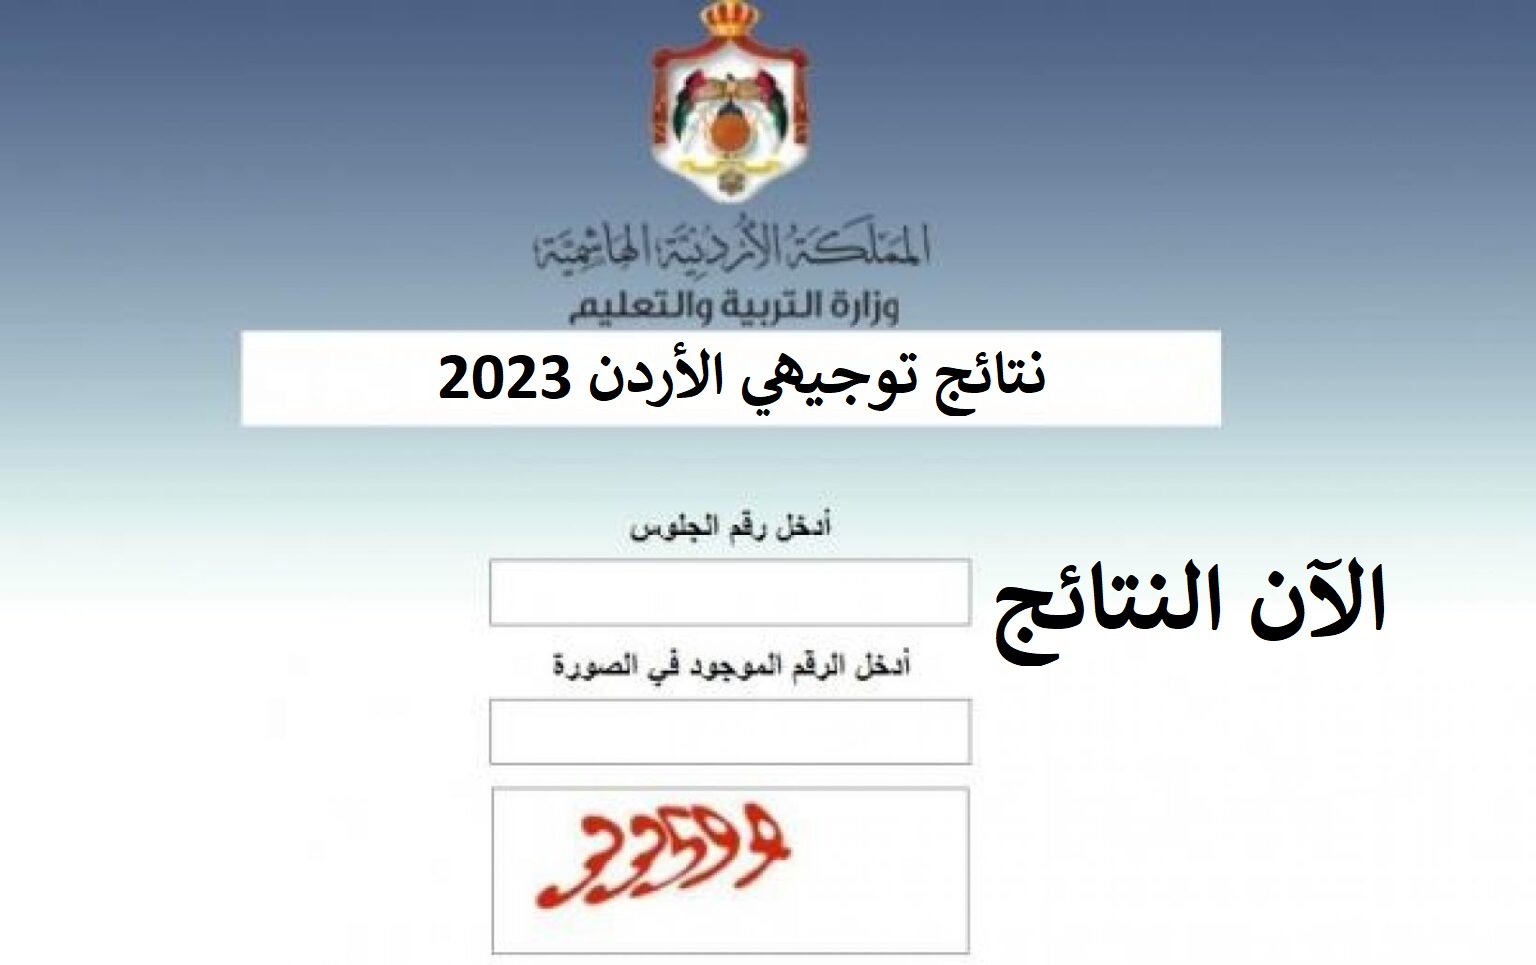 الآن نتائج توجيهي الأردن حسب الاسم - نتائج الثانوية العامة في الأردن 2023